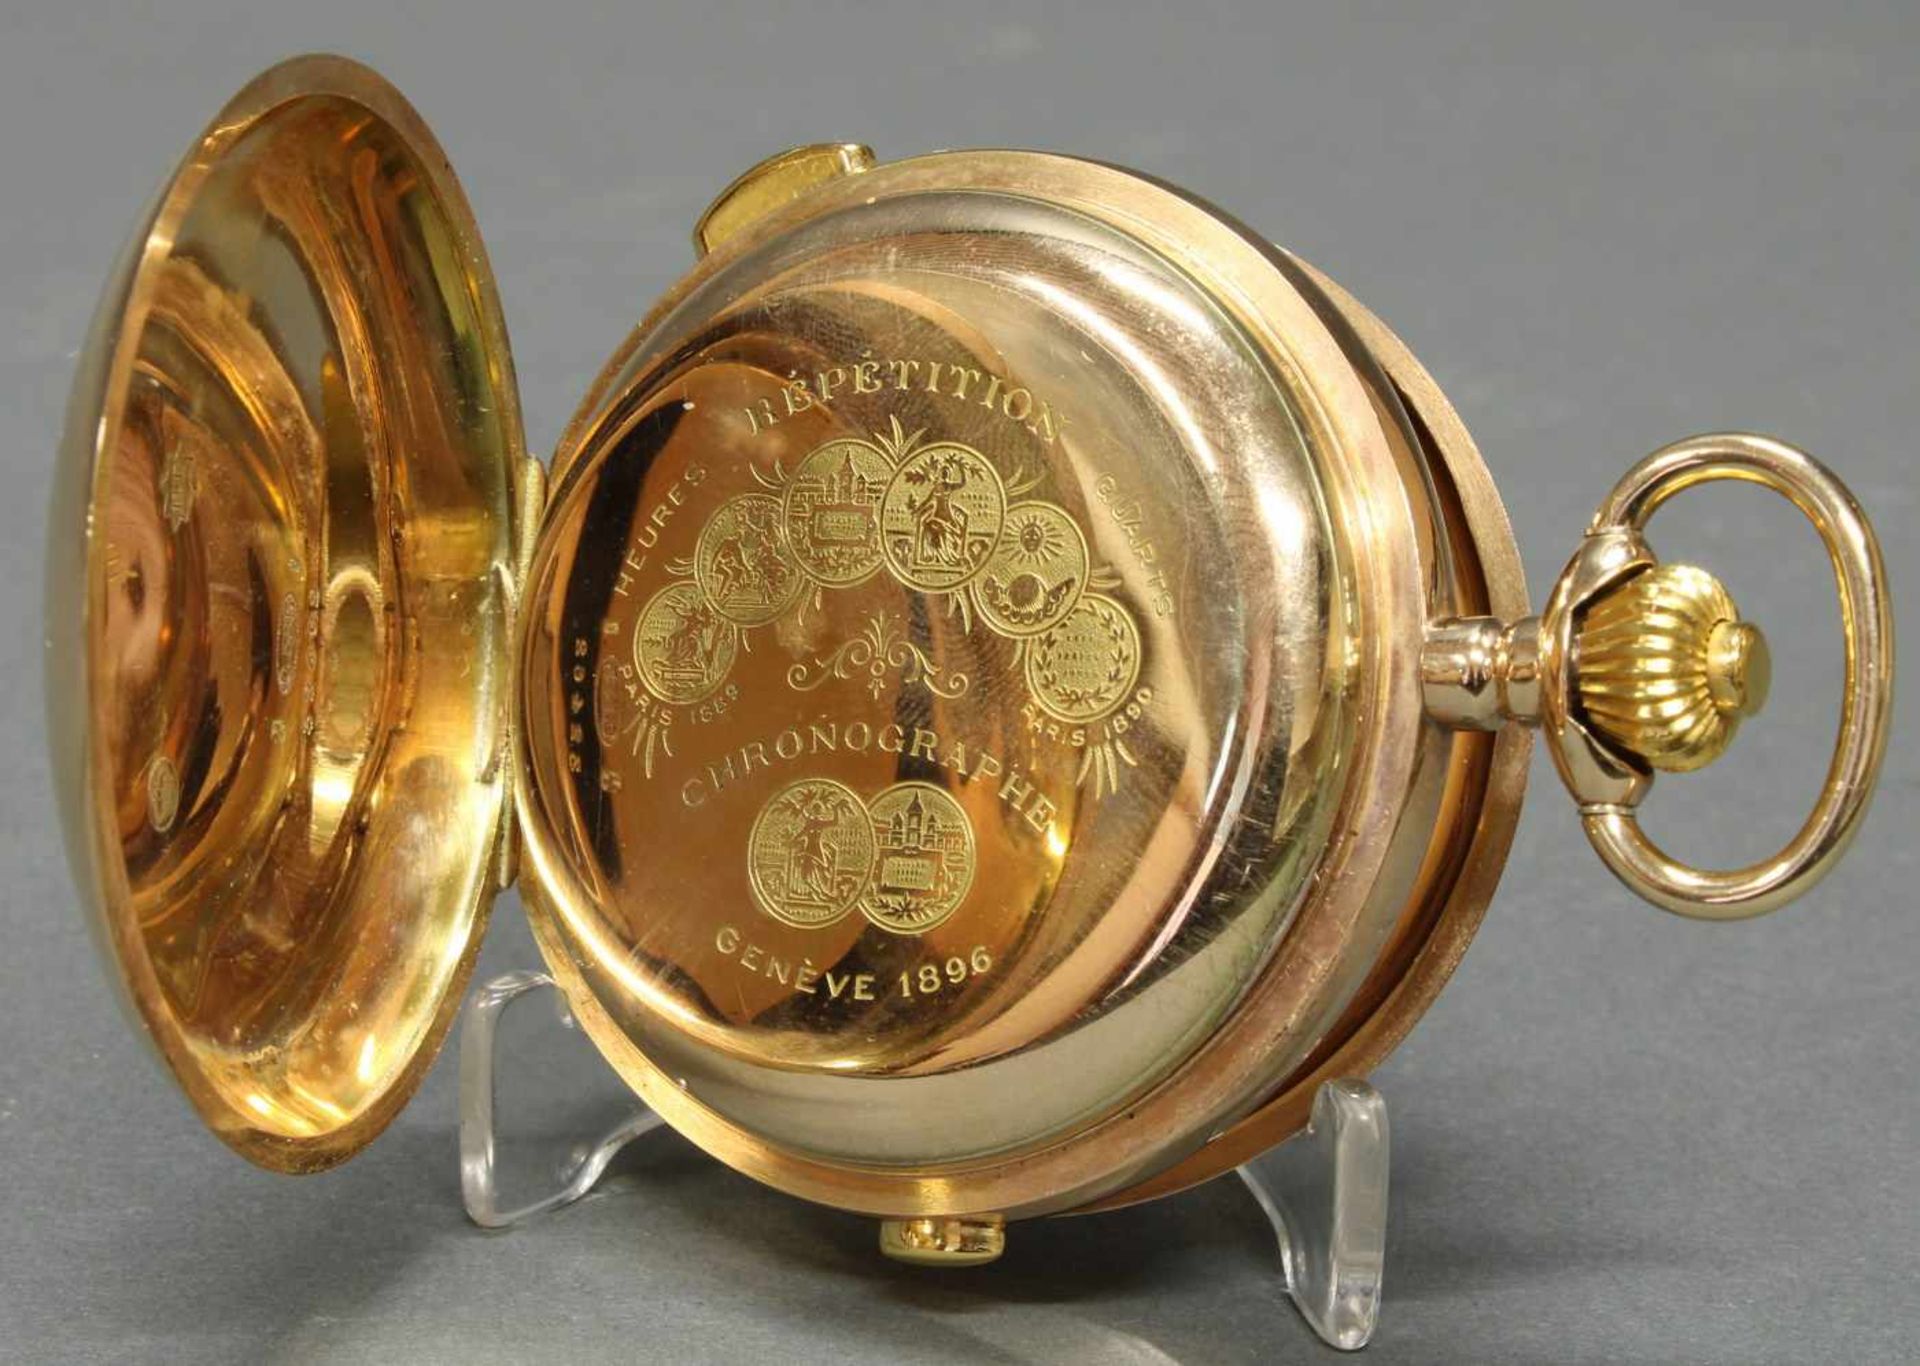 Herrentaschenuhr, Savonette, um 1900, 1/4-Stunden-Repetition, Chronograph, GG 585, Staubdeckel Gold, - Image 3 of 6